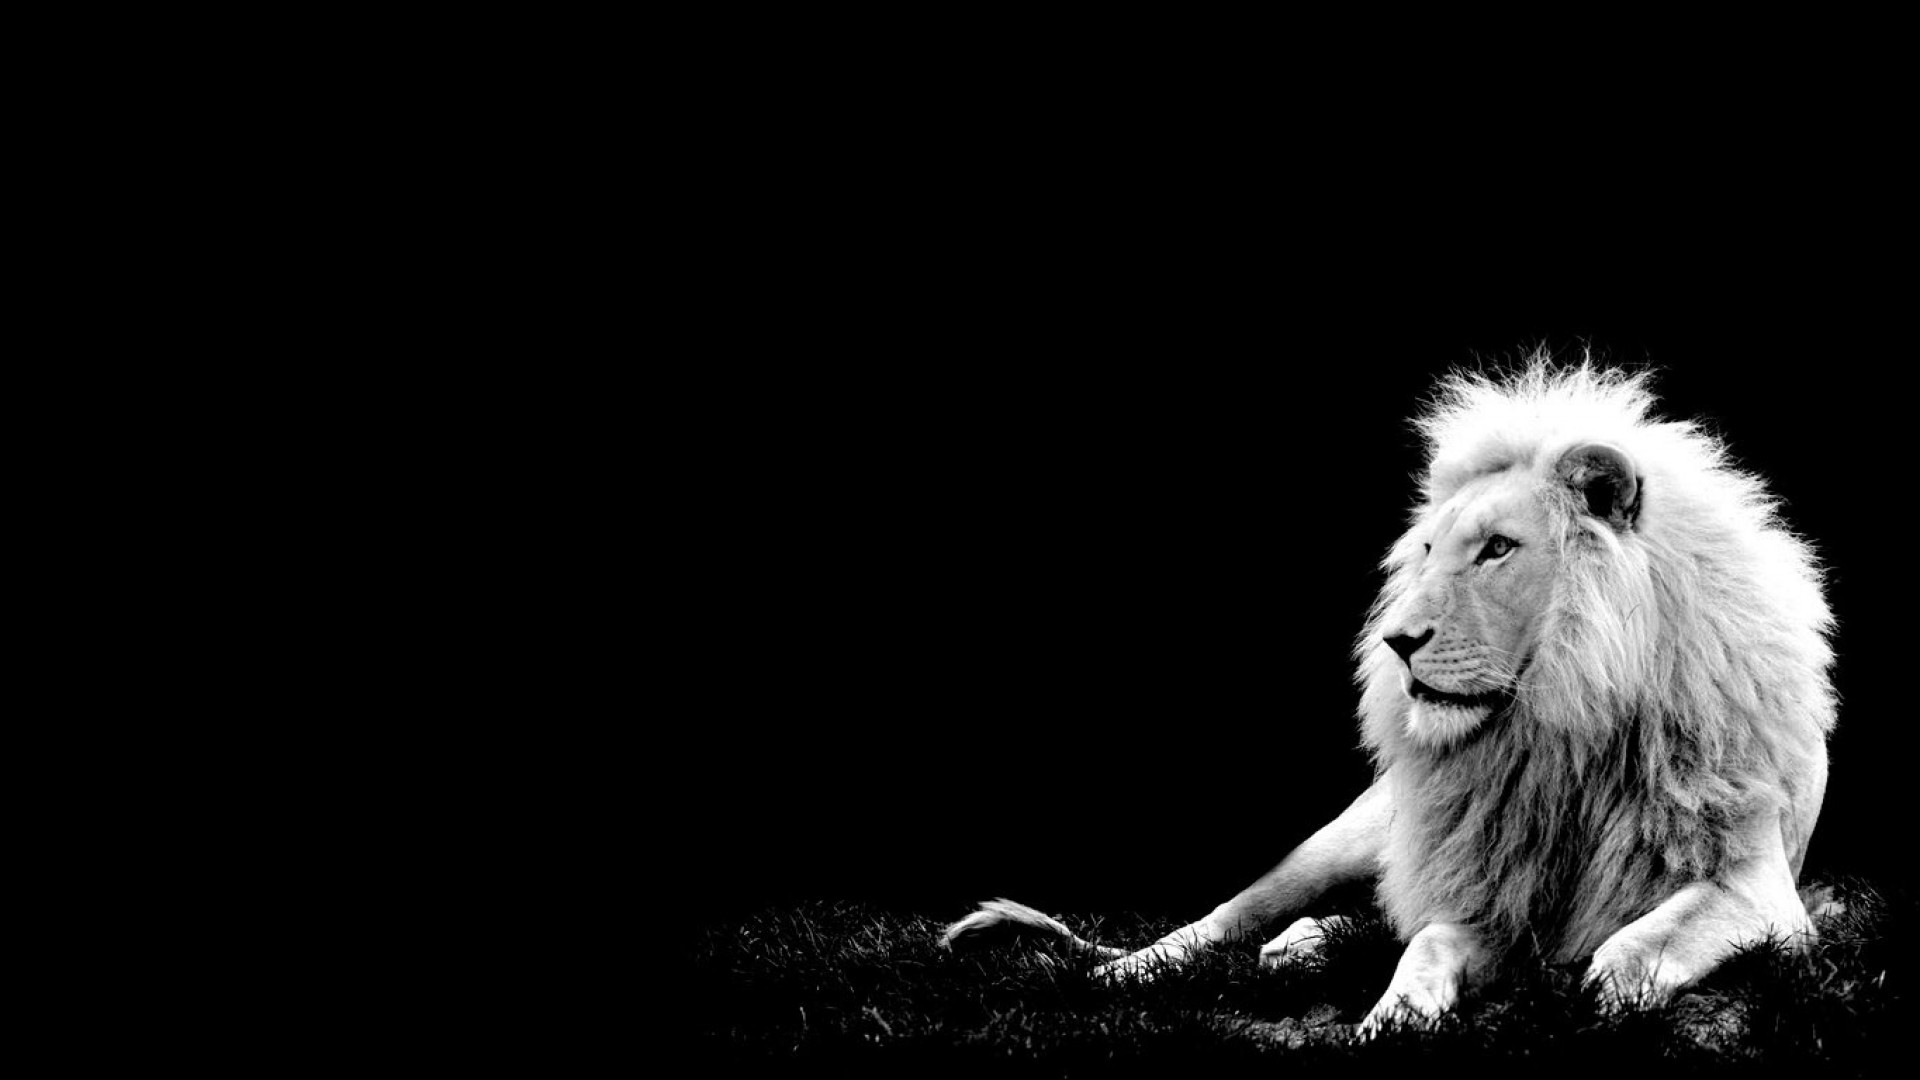 Hình nền sư tử (lion wallpaper): Hình nền sư tử sẽ tạo cho bạn một không gian sống mới, cảm giác được bao quanh bởi sức mạnh và vẻ đẹp của sư tử. Tận hưởng một không gian sống mới với hình nền sư tử đẹp mắt này.